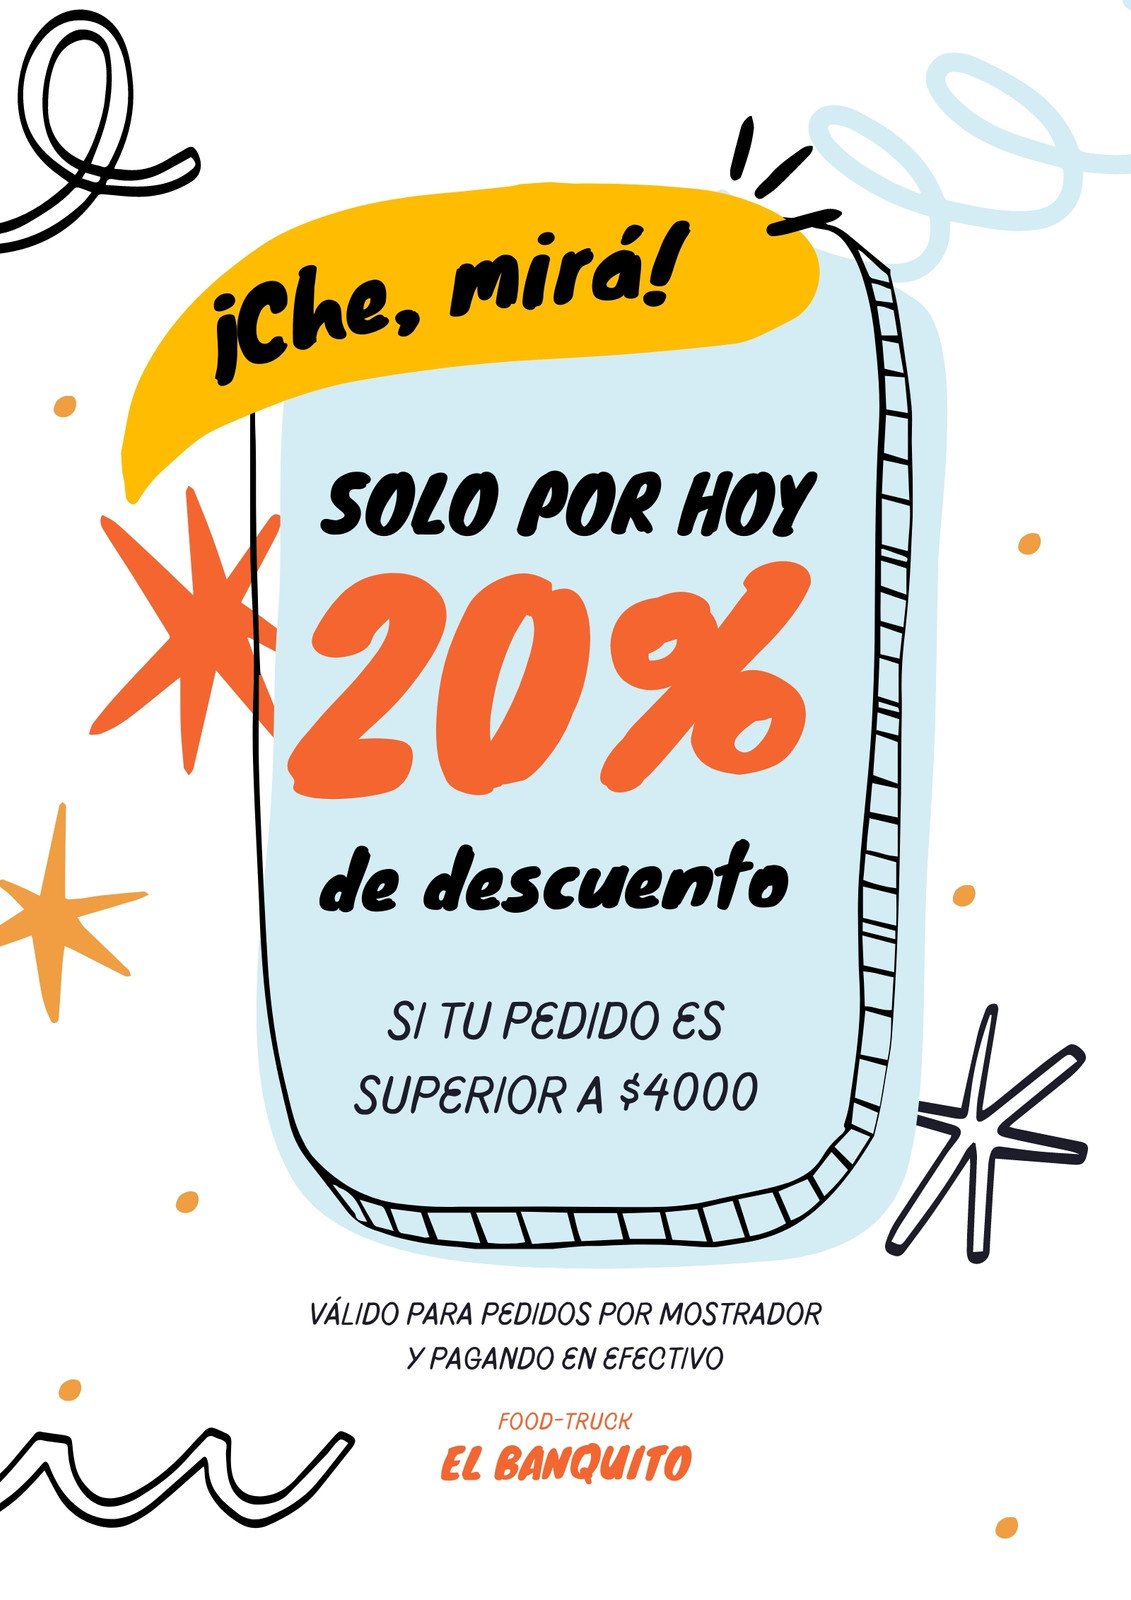 Divertidas promociones en español